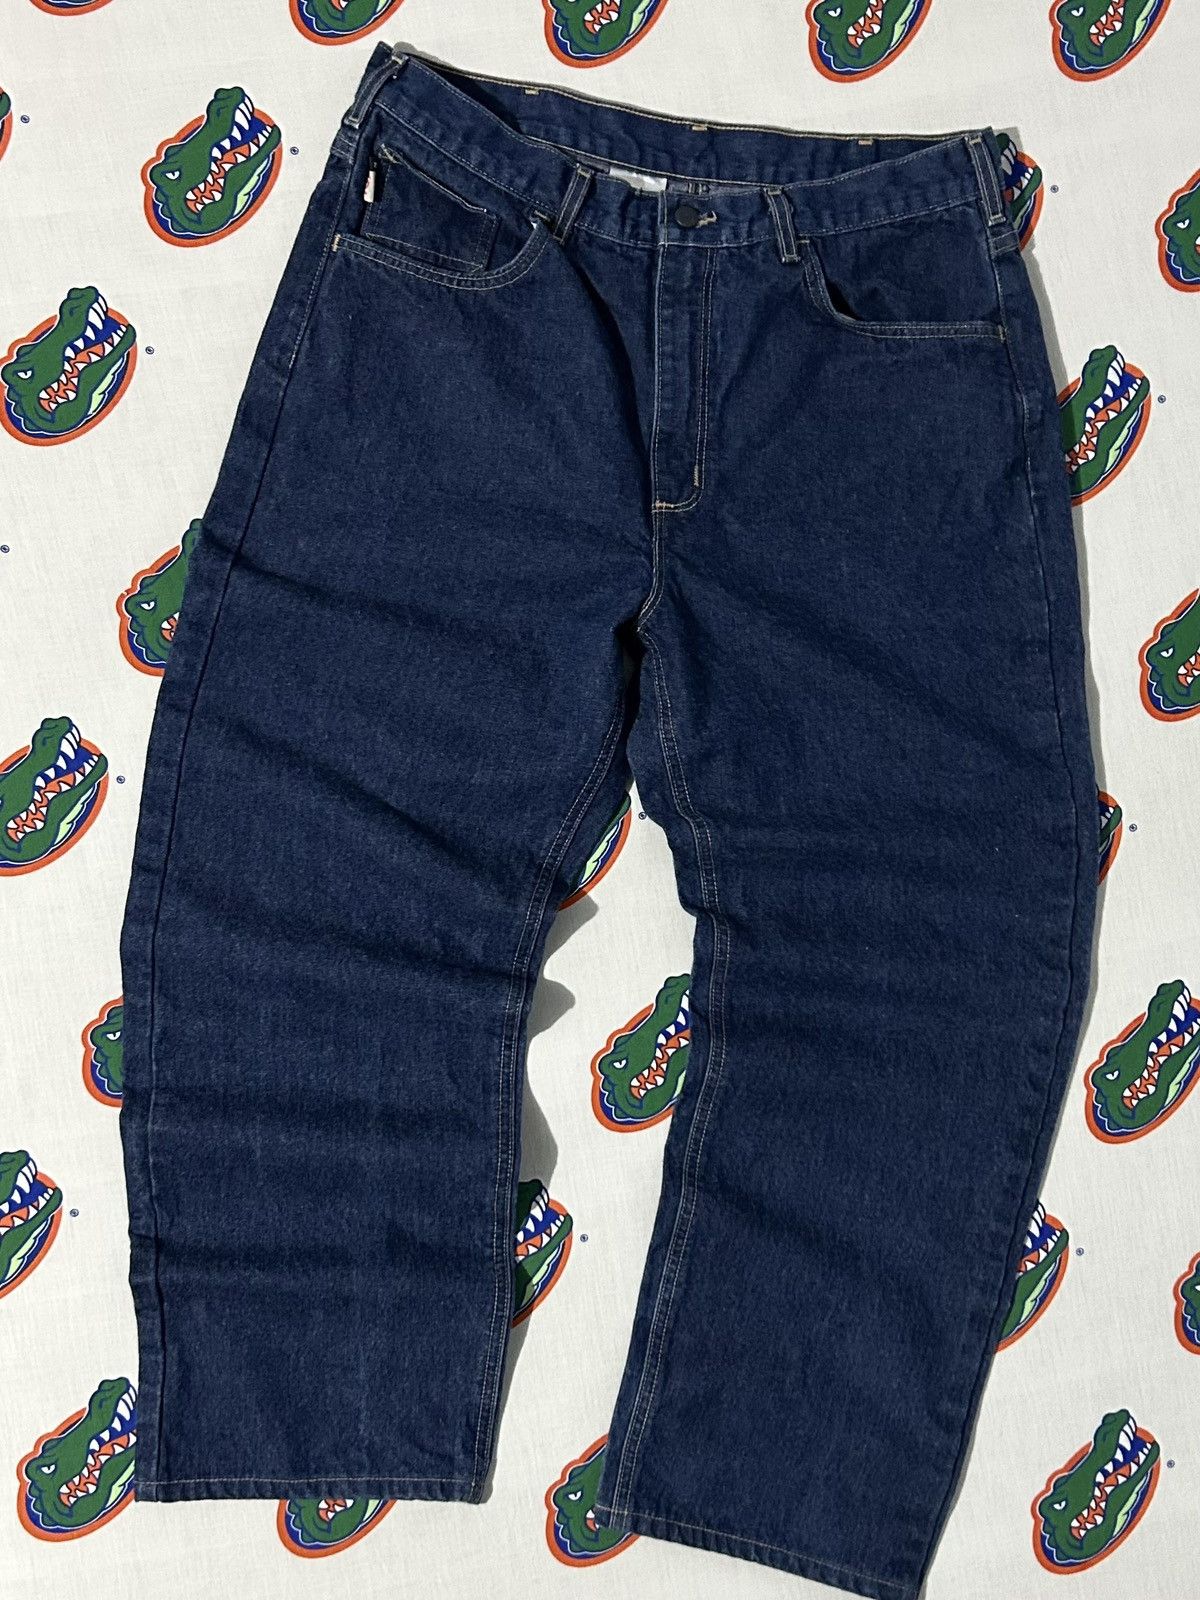 Vintage Mens Vintage Carhartt Fire Resistant Denim Jeans 36 x 30 Size US 36 / EU 52 - 3 Thumbnail